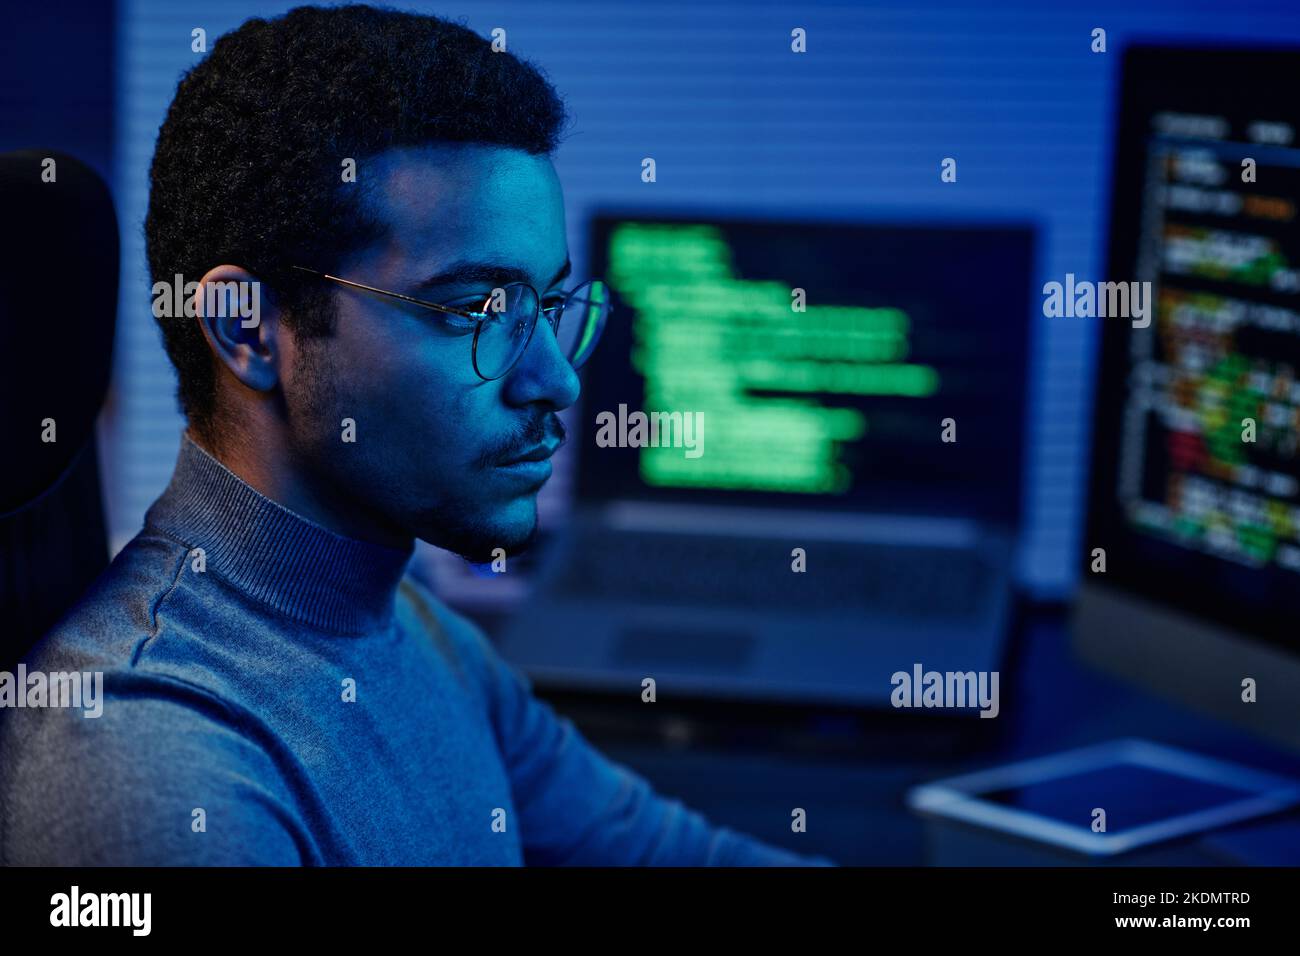 Tecnico di supporto IT giovane e serio negli occhiali che guardano lo schermo del computer mentre si siede davanti ai monitor e decodifica i dati Foto Stock